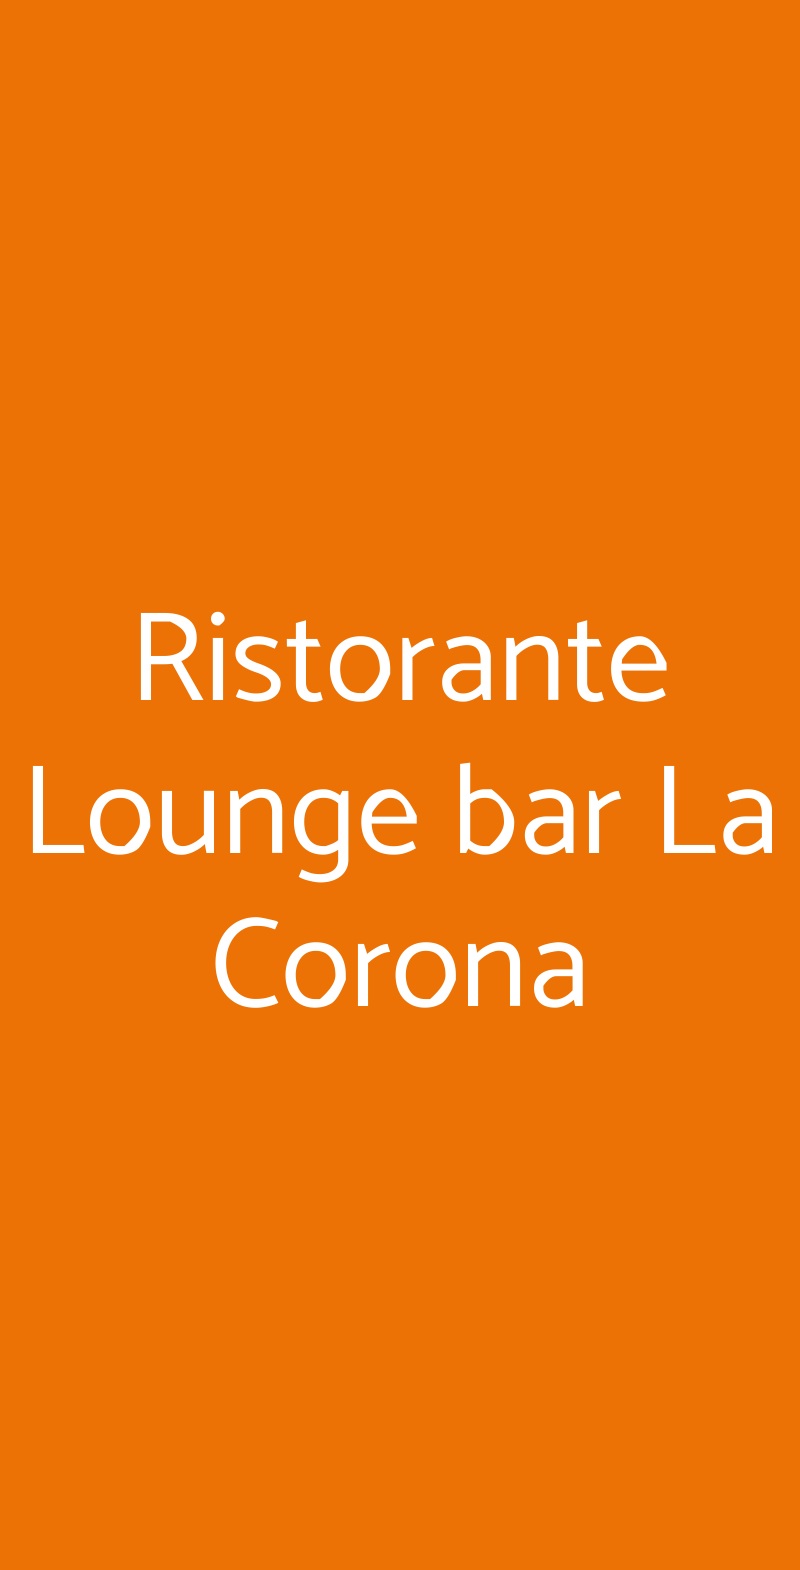 Ristorante Lounge bar La Corona Olbia menù 1 pagina